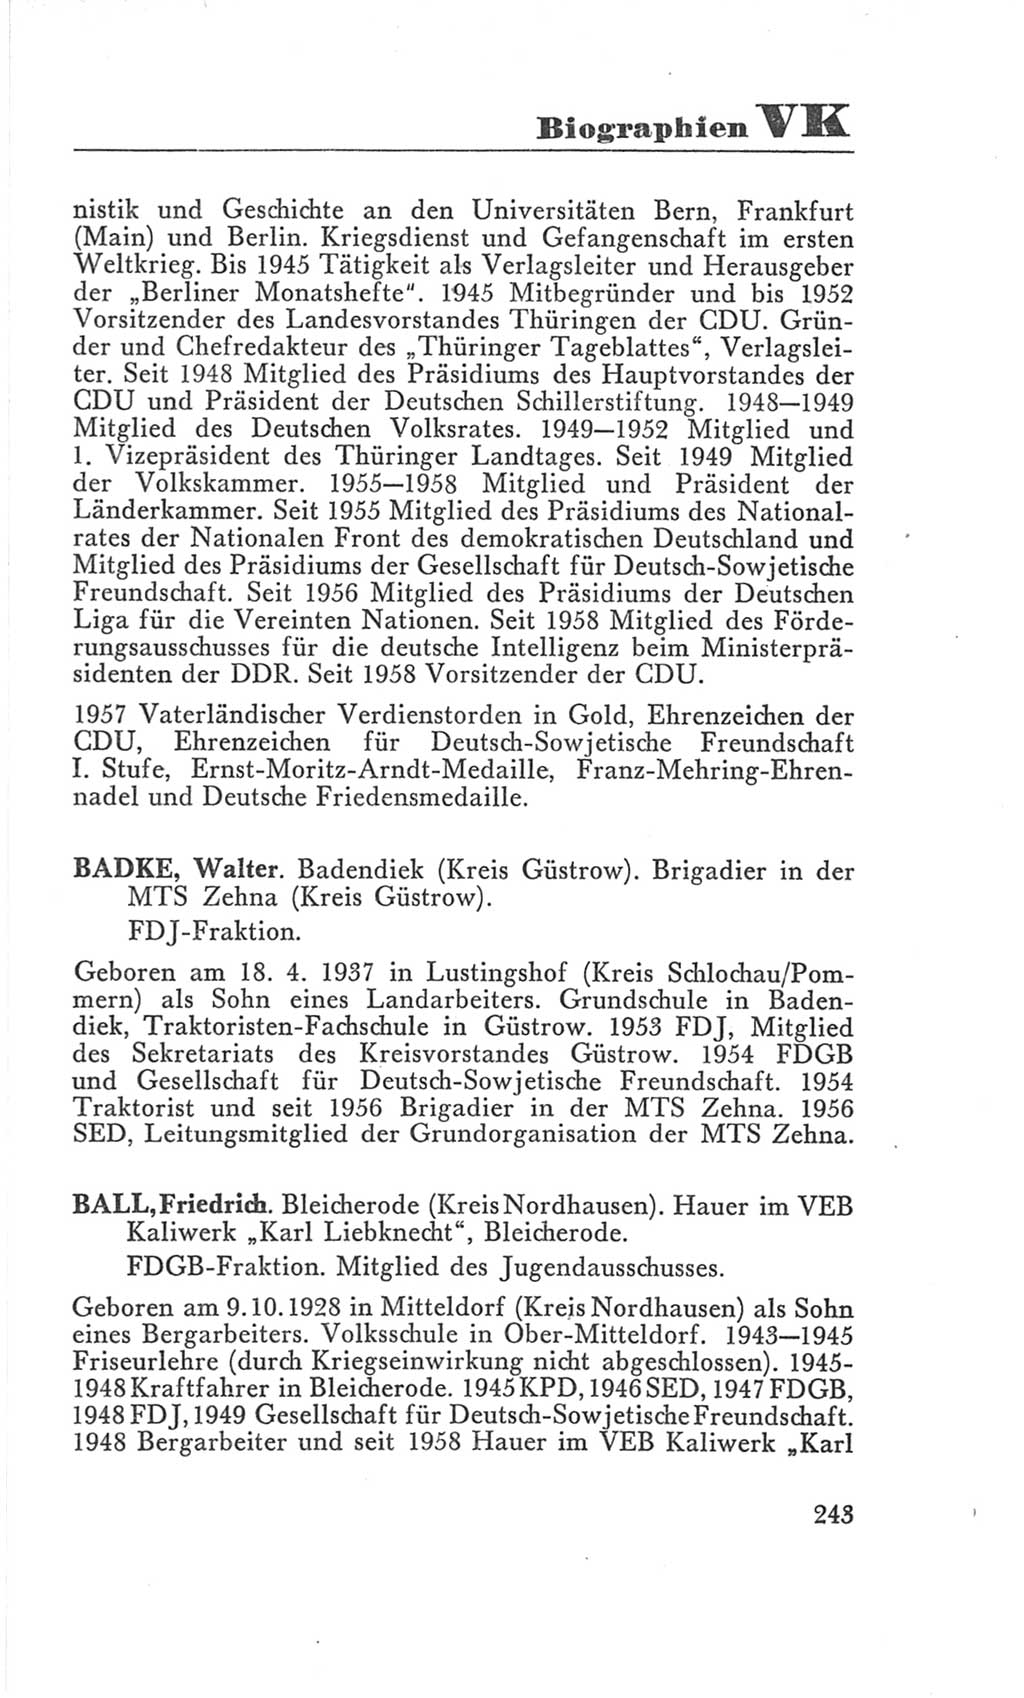 Handbuch der Volkskammer (VK) der Deutschen Demokratischen Republik (DDR), 3. Wahlperiode 1958-1963, Seite 243 (Hdb. VK. DDR 3. WP. 1958-1963, S. 243)